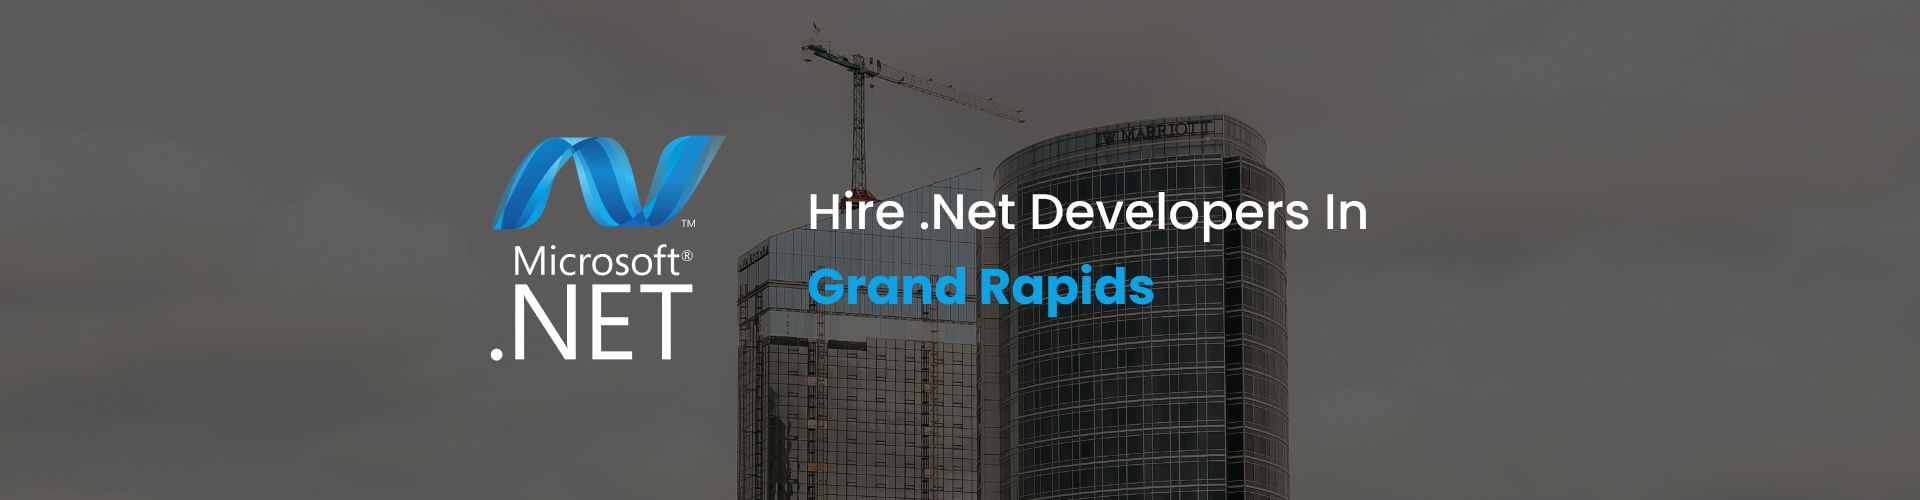 hire .net developers in rapids